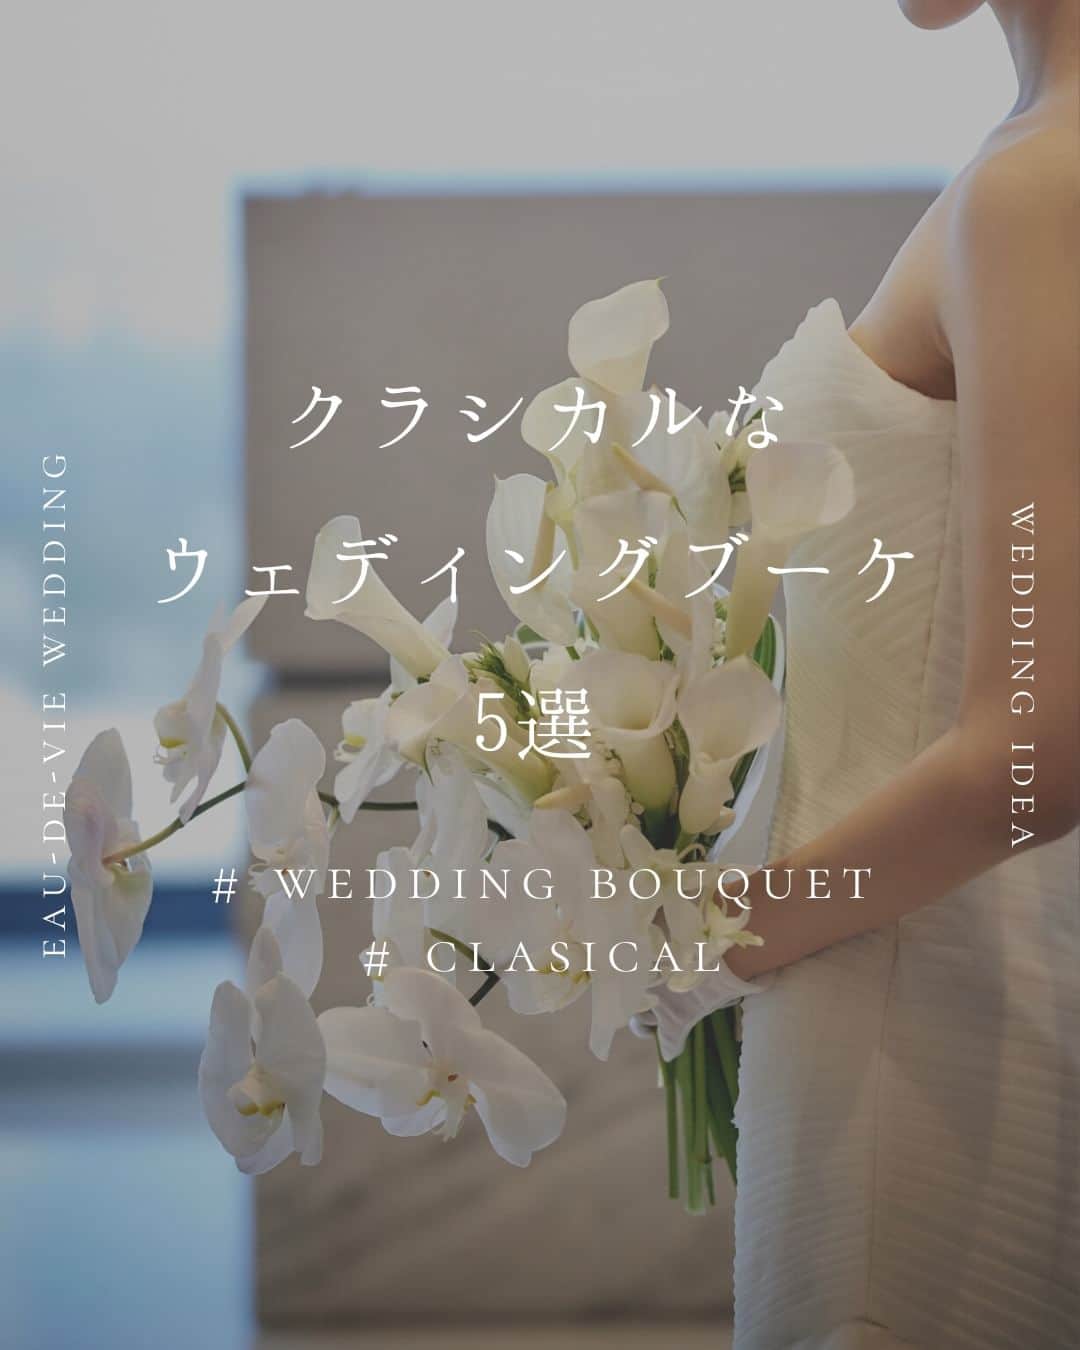 オードヴィーウェディング【名古屋・結婚式場】 のインスタグラム：「/ bouquet トレンドの花材もとりいれつつ、 クラシカルな雰囲気も持ち合わせた ブーケのご紹介です。  花嫁といえばな、ホワイトカラーは 清廉潔白、まさにウェディングにピッタリのお色味です。  ┈┈┈┈┈┈┈┈┈┈┈┈┈┈┈┈┈  これから結婚式を挙げる花嫁さまへ 準備が楽しくなるウェディング情報発信中  おいしいもおしゃれも全部叶える 名古屋のおしゃれなレストランwedding オードヴィーウェディング  会場をくわしく見るならプロフィール ＠eaudevie_wedding.edv の𝐔𝐑𝐋をタップ  ┈┈┈┈┈┈┈┈┈┈┈┈┈┈┈┈┈ #オードヴィーウェディング #オードヴィー花嫁 #愛知式場 #レストランウェディング #結婚式ブーケ #ブーケ #フラワーアレンジ #weddingbouquet #bouquet #オーダーブーケ #フラワーアレンジメント #ブライダルブーケ #ナチュラルウェディング #ドライフラワーブーケ」